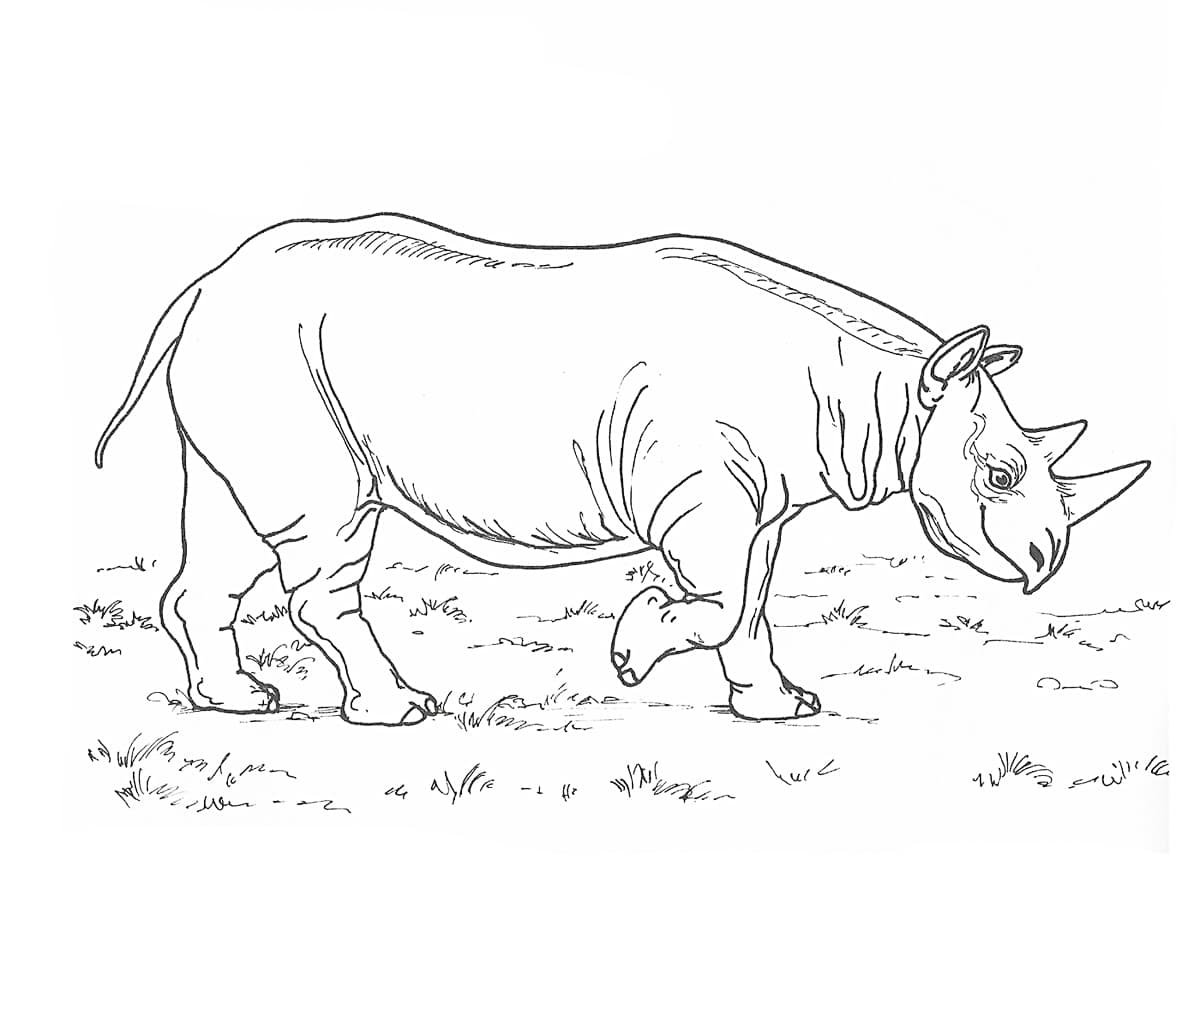 Детская раскраска носорог